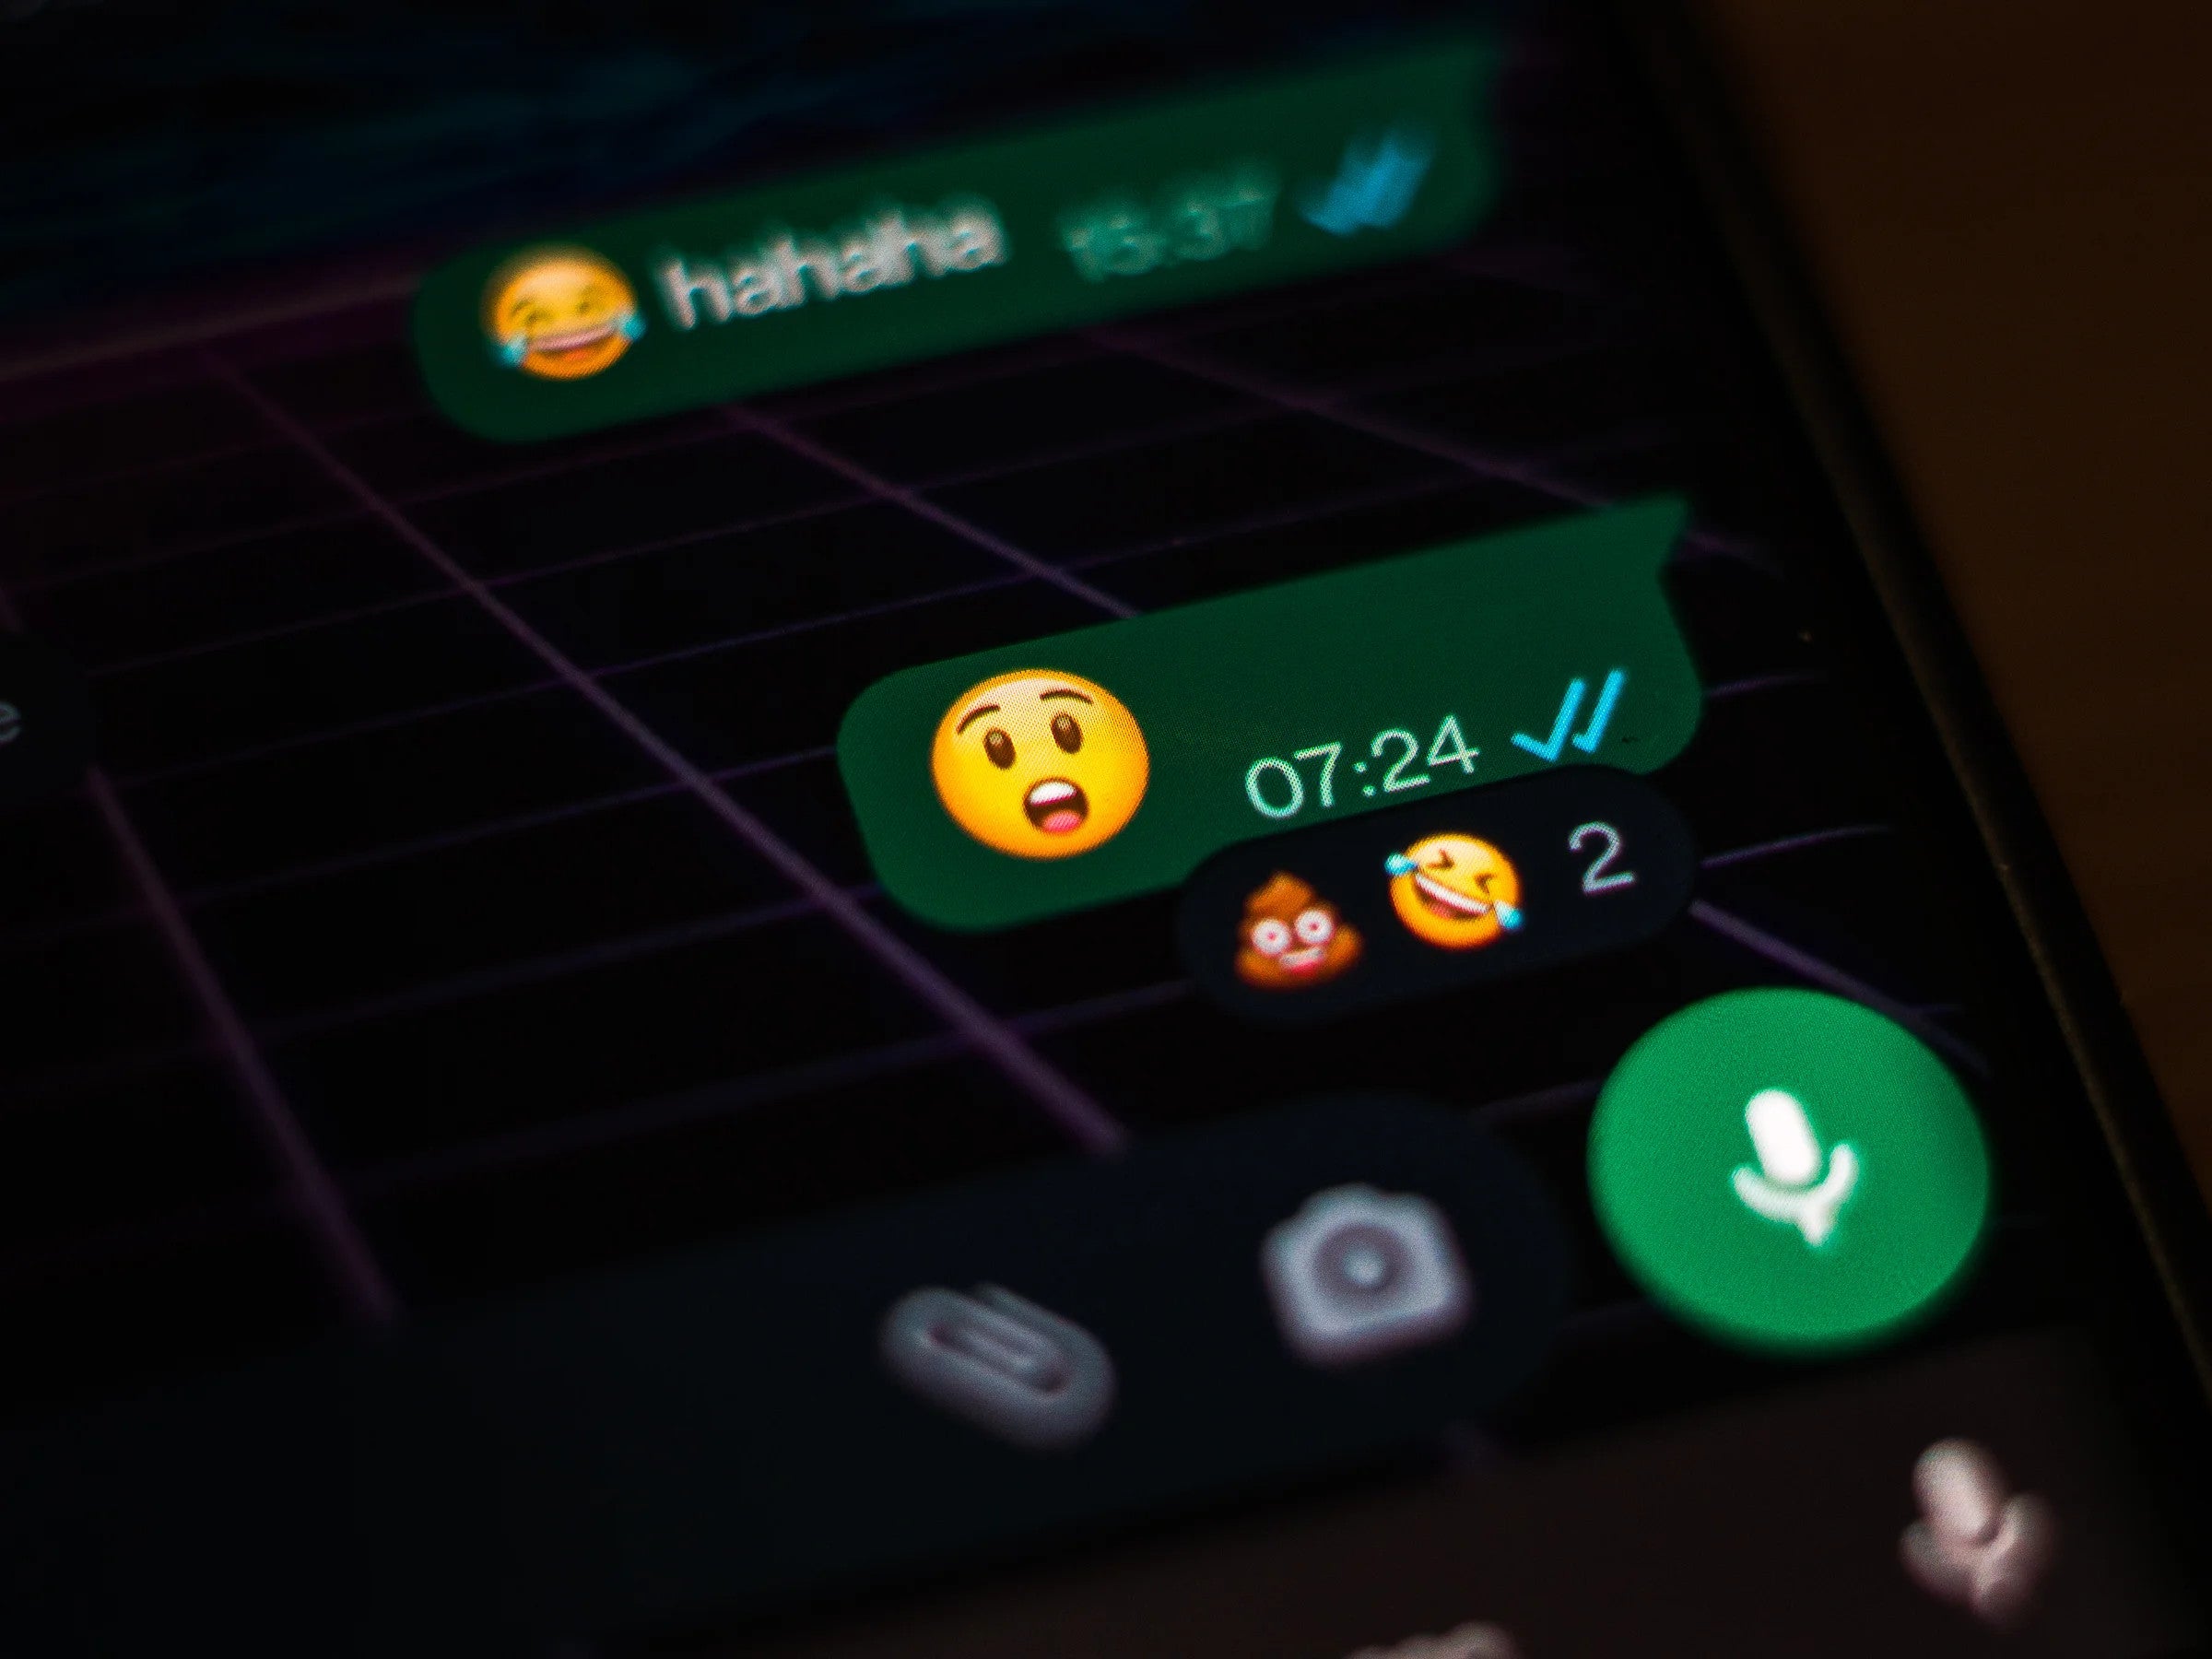 #WhatsApp: Diese neue Emoji-Funktion wird Chats für immer verändern